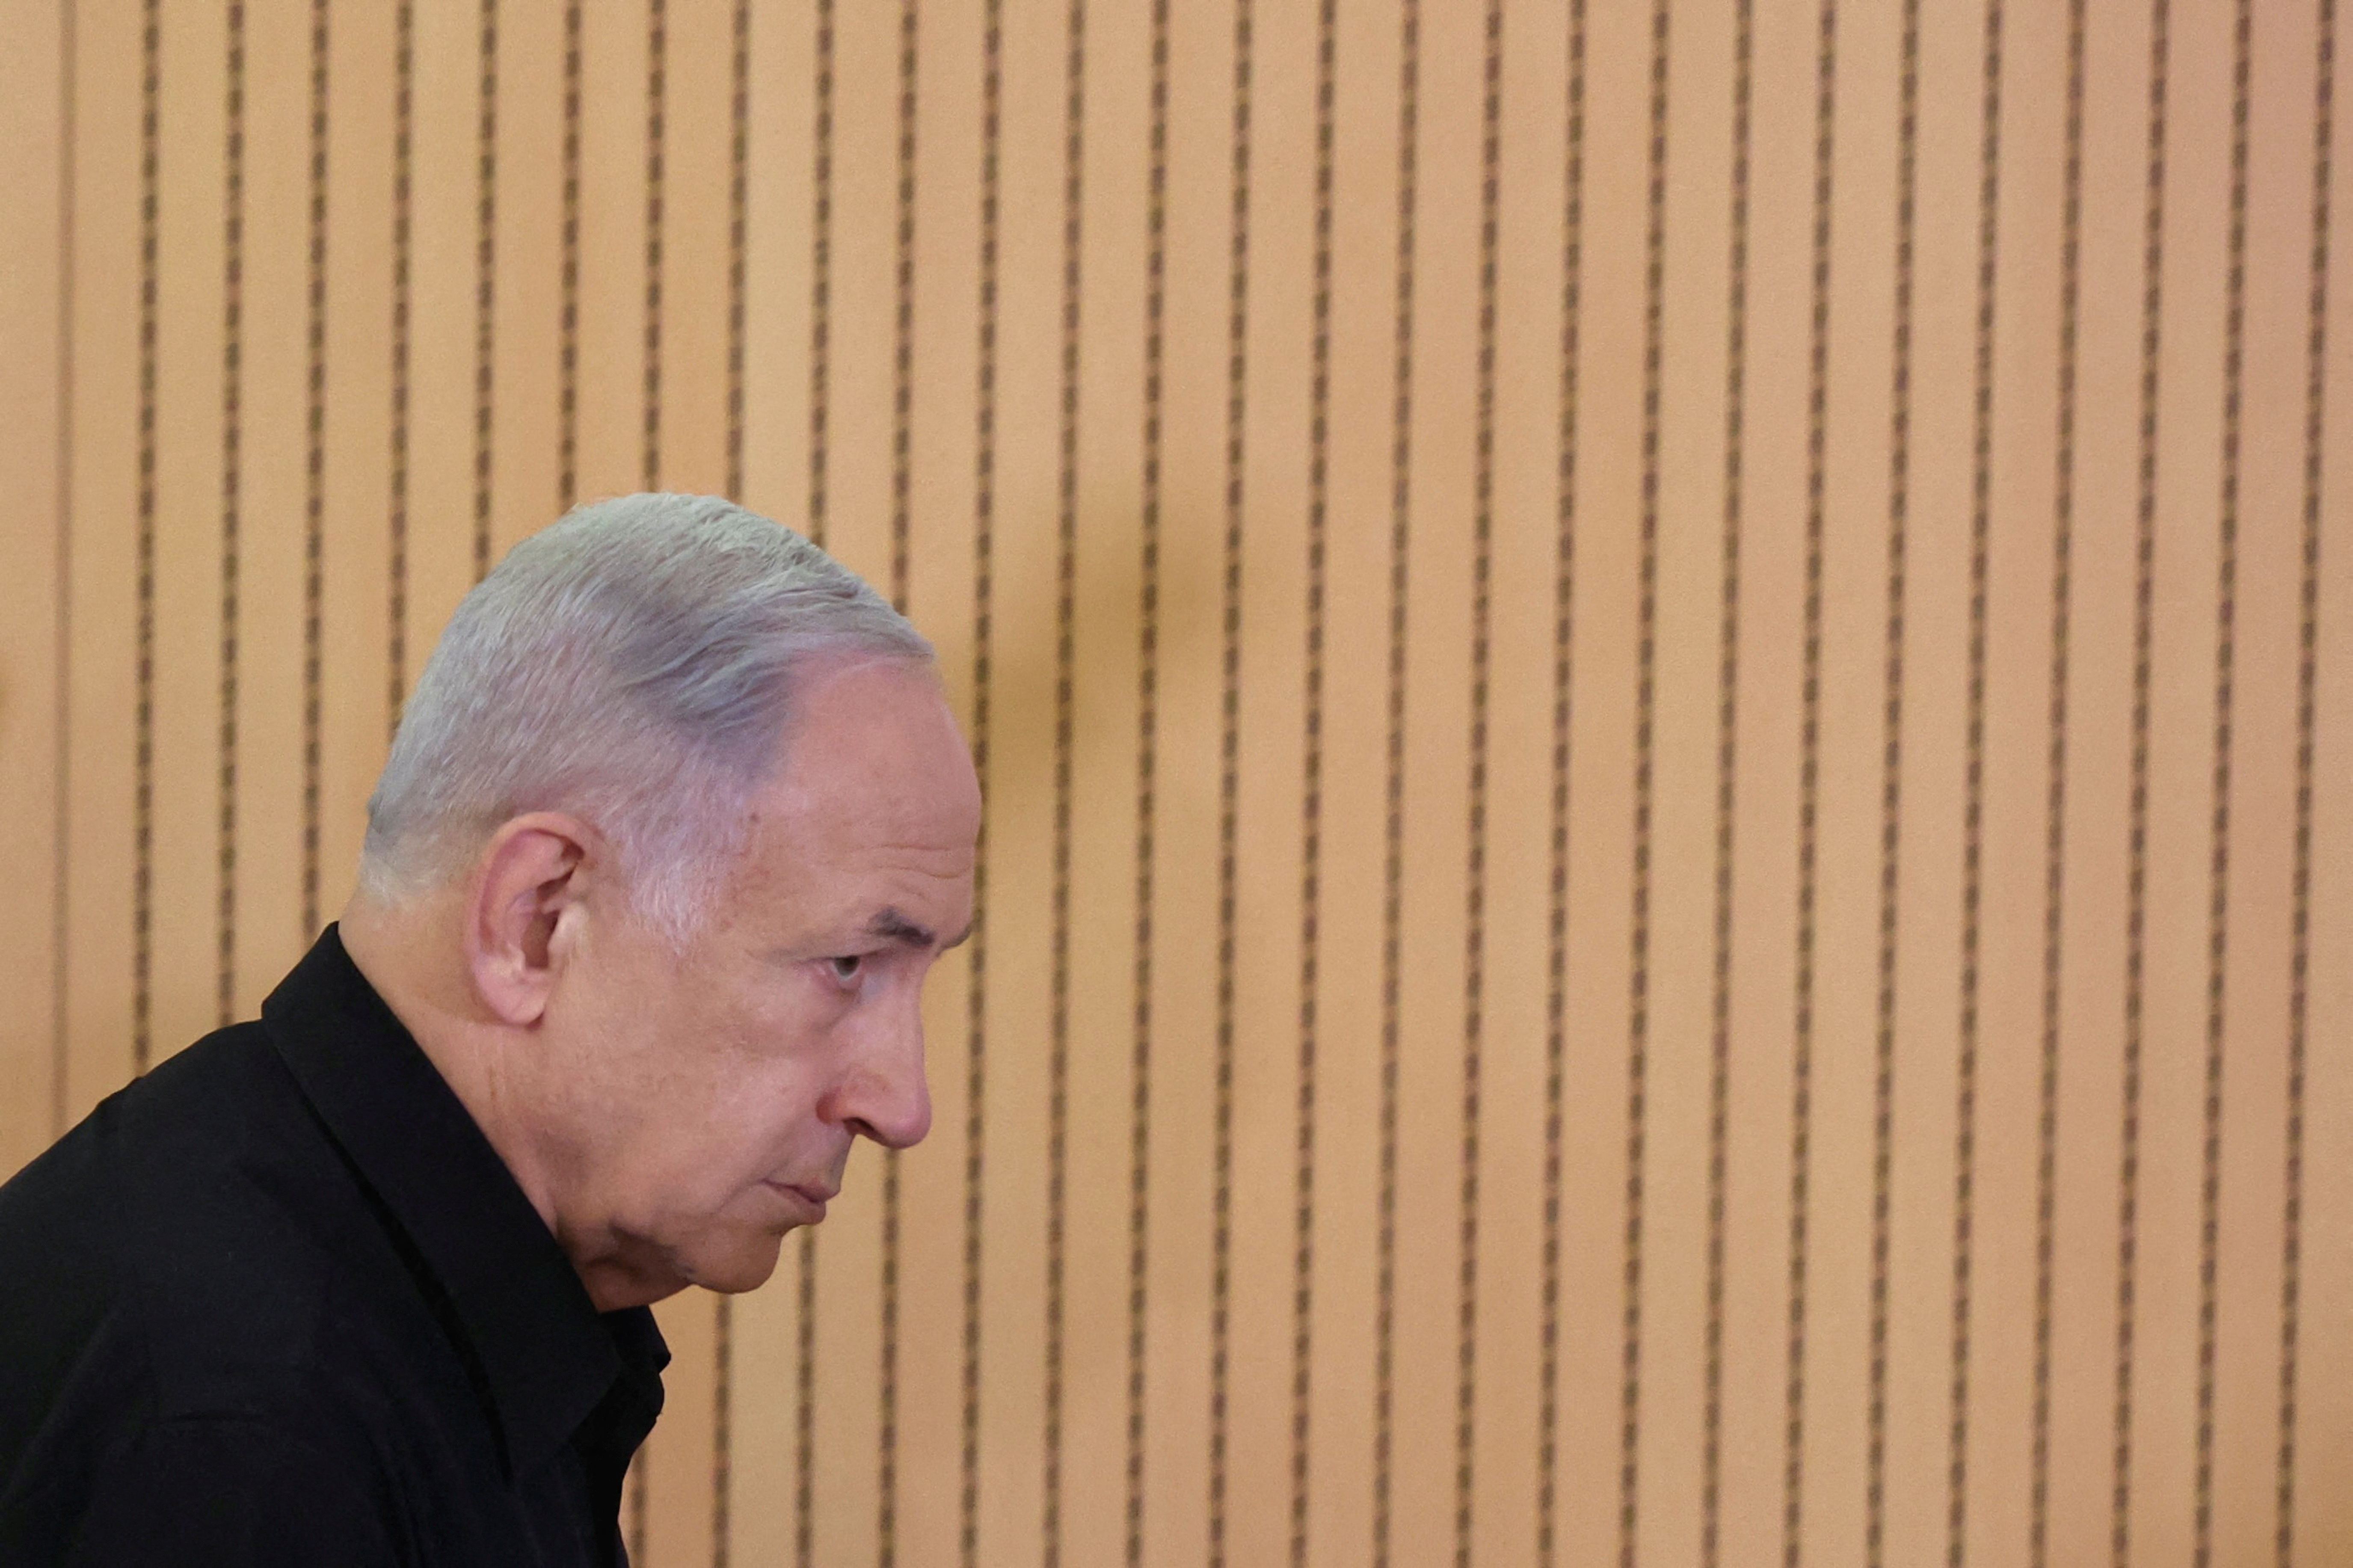 Israeli Prime Minister Netanyahu holds a press conference in Tel Aviv